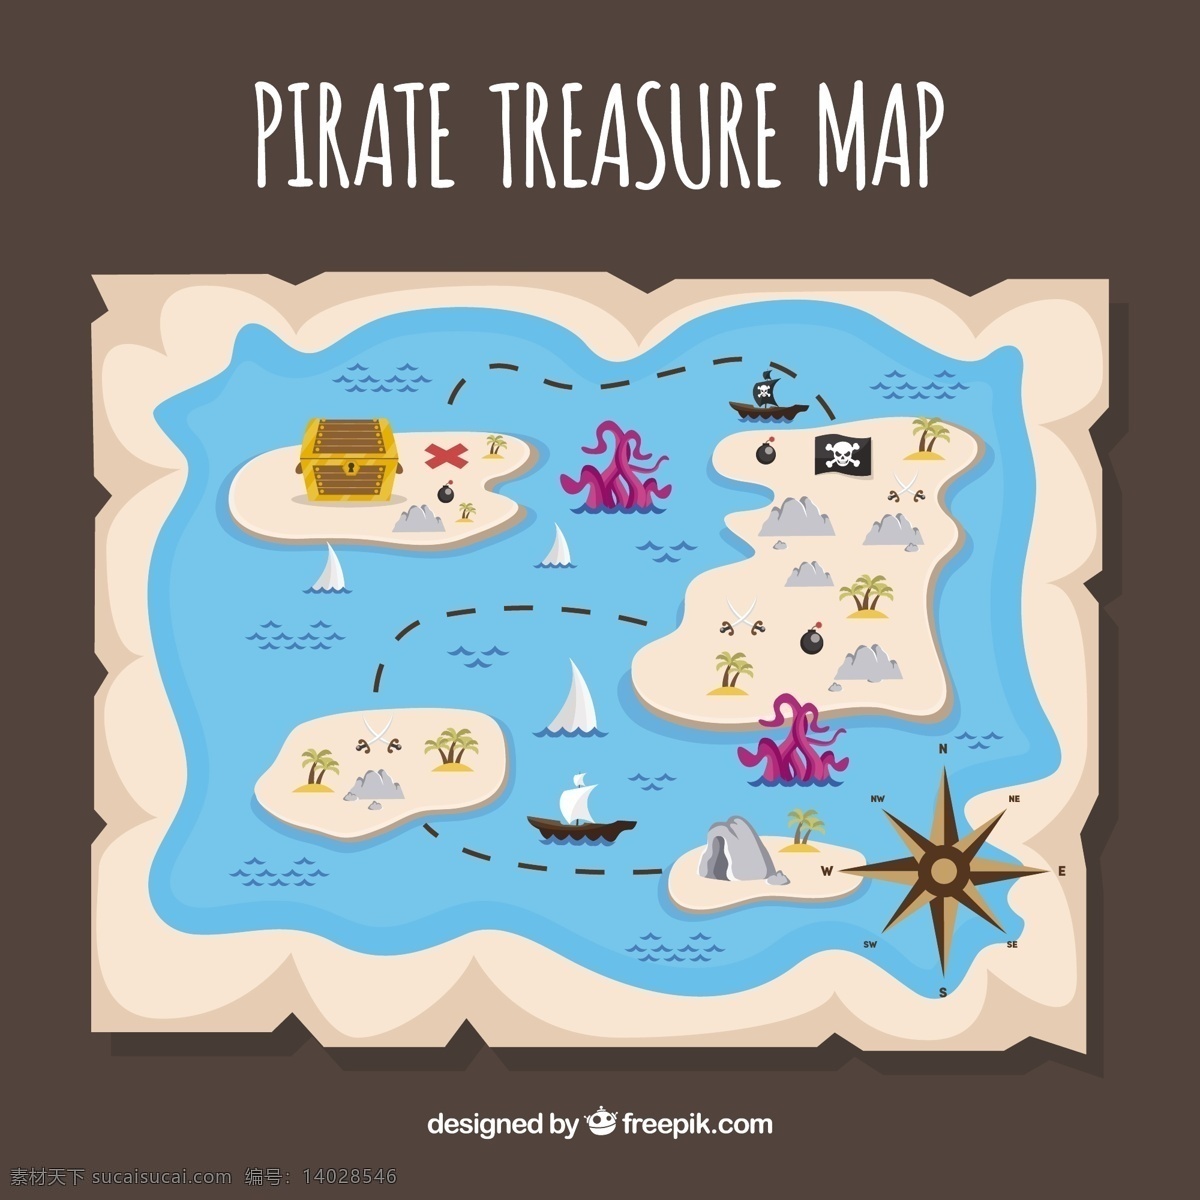 岛屿 海盗 藏 宝图 几个岛屿的 藏宝图